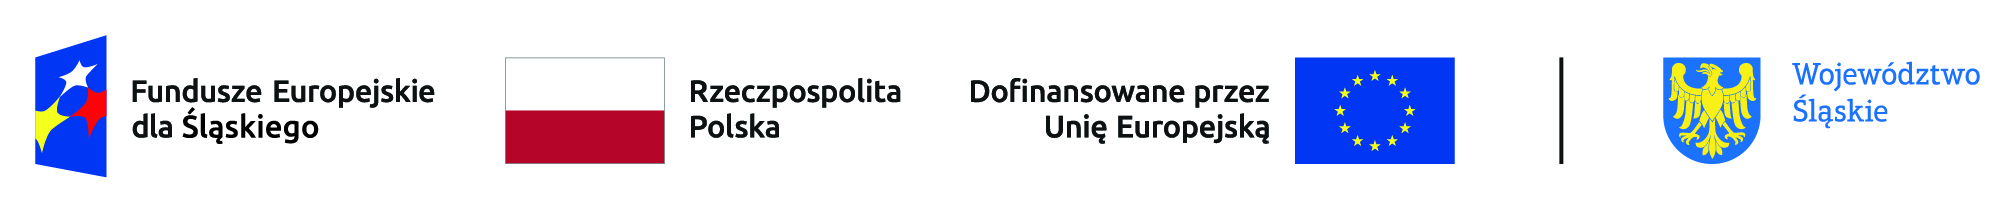 Loga: Fundusze Europejskie dla Śląskiego, Barwy Narodowe Rzeczpospolitej Polskiej, Dofinansowano przez Unię Europejską, Województwa śląskiego